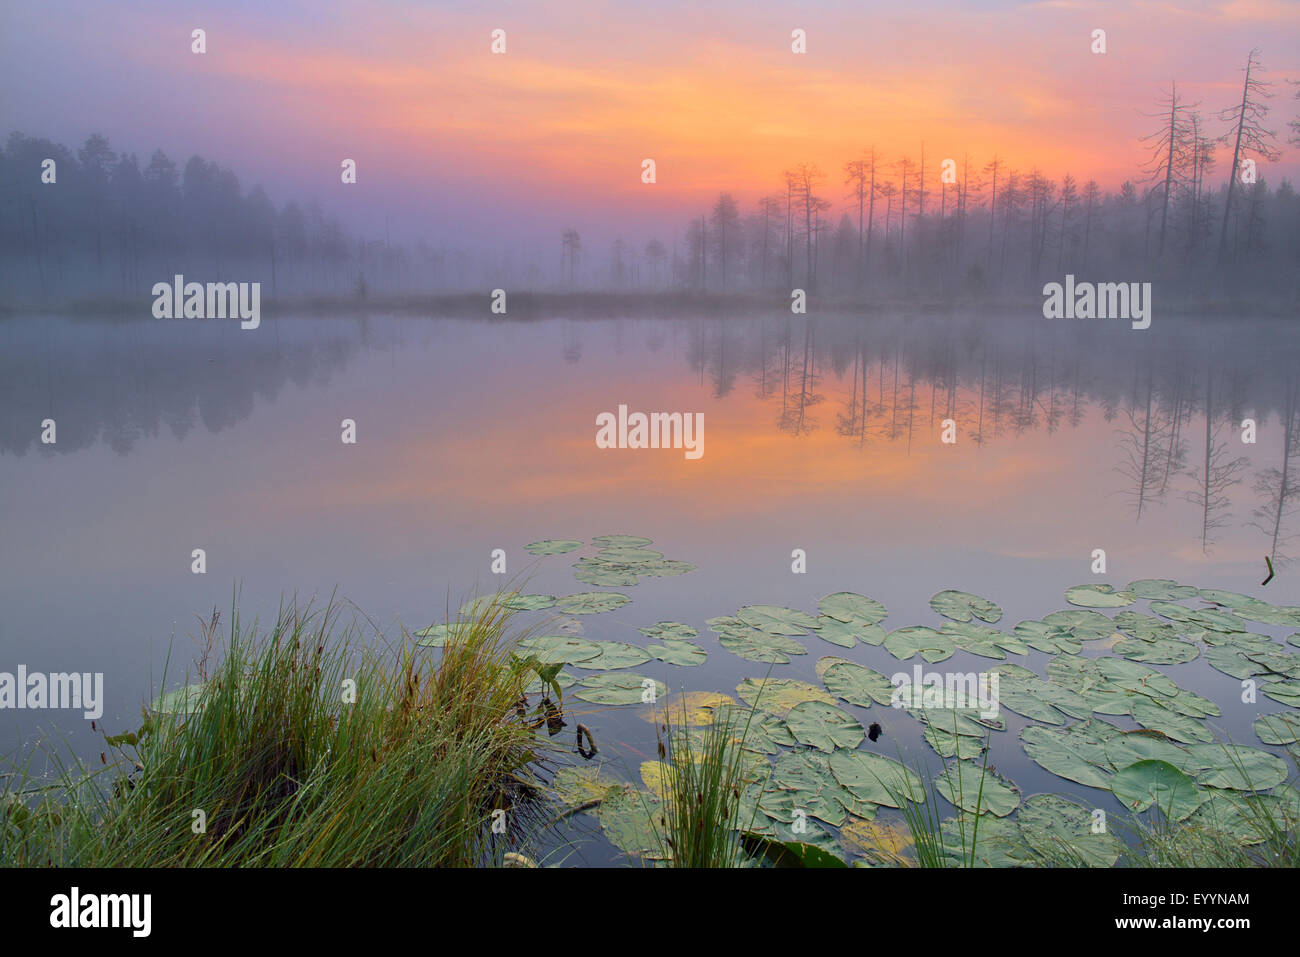 morning mood at a lake, Finland Stock Photo